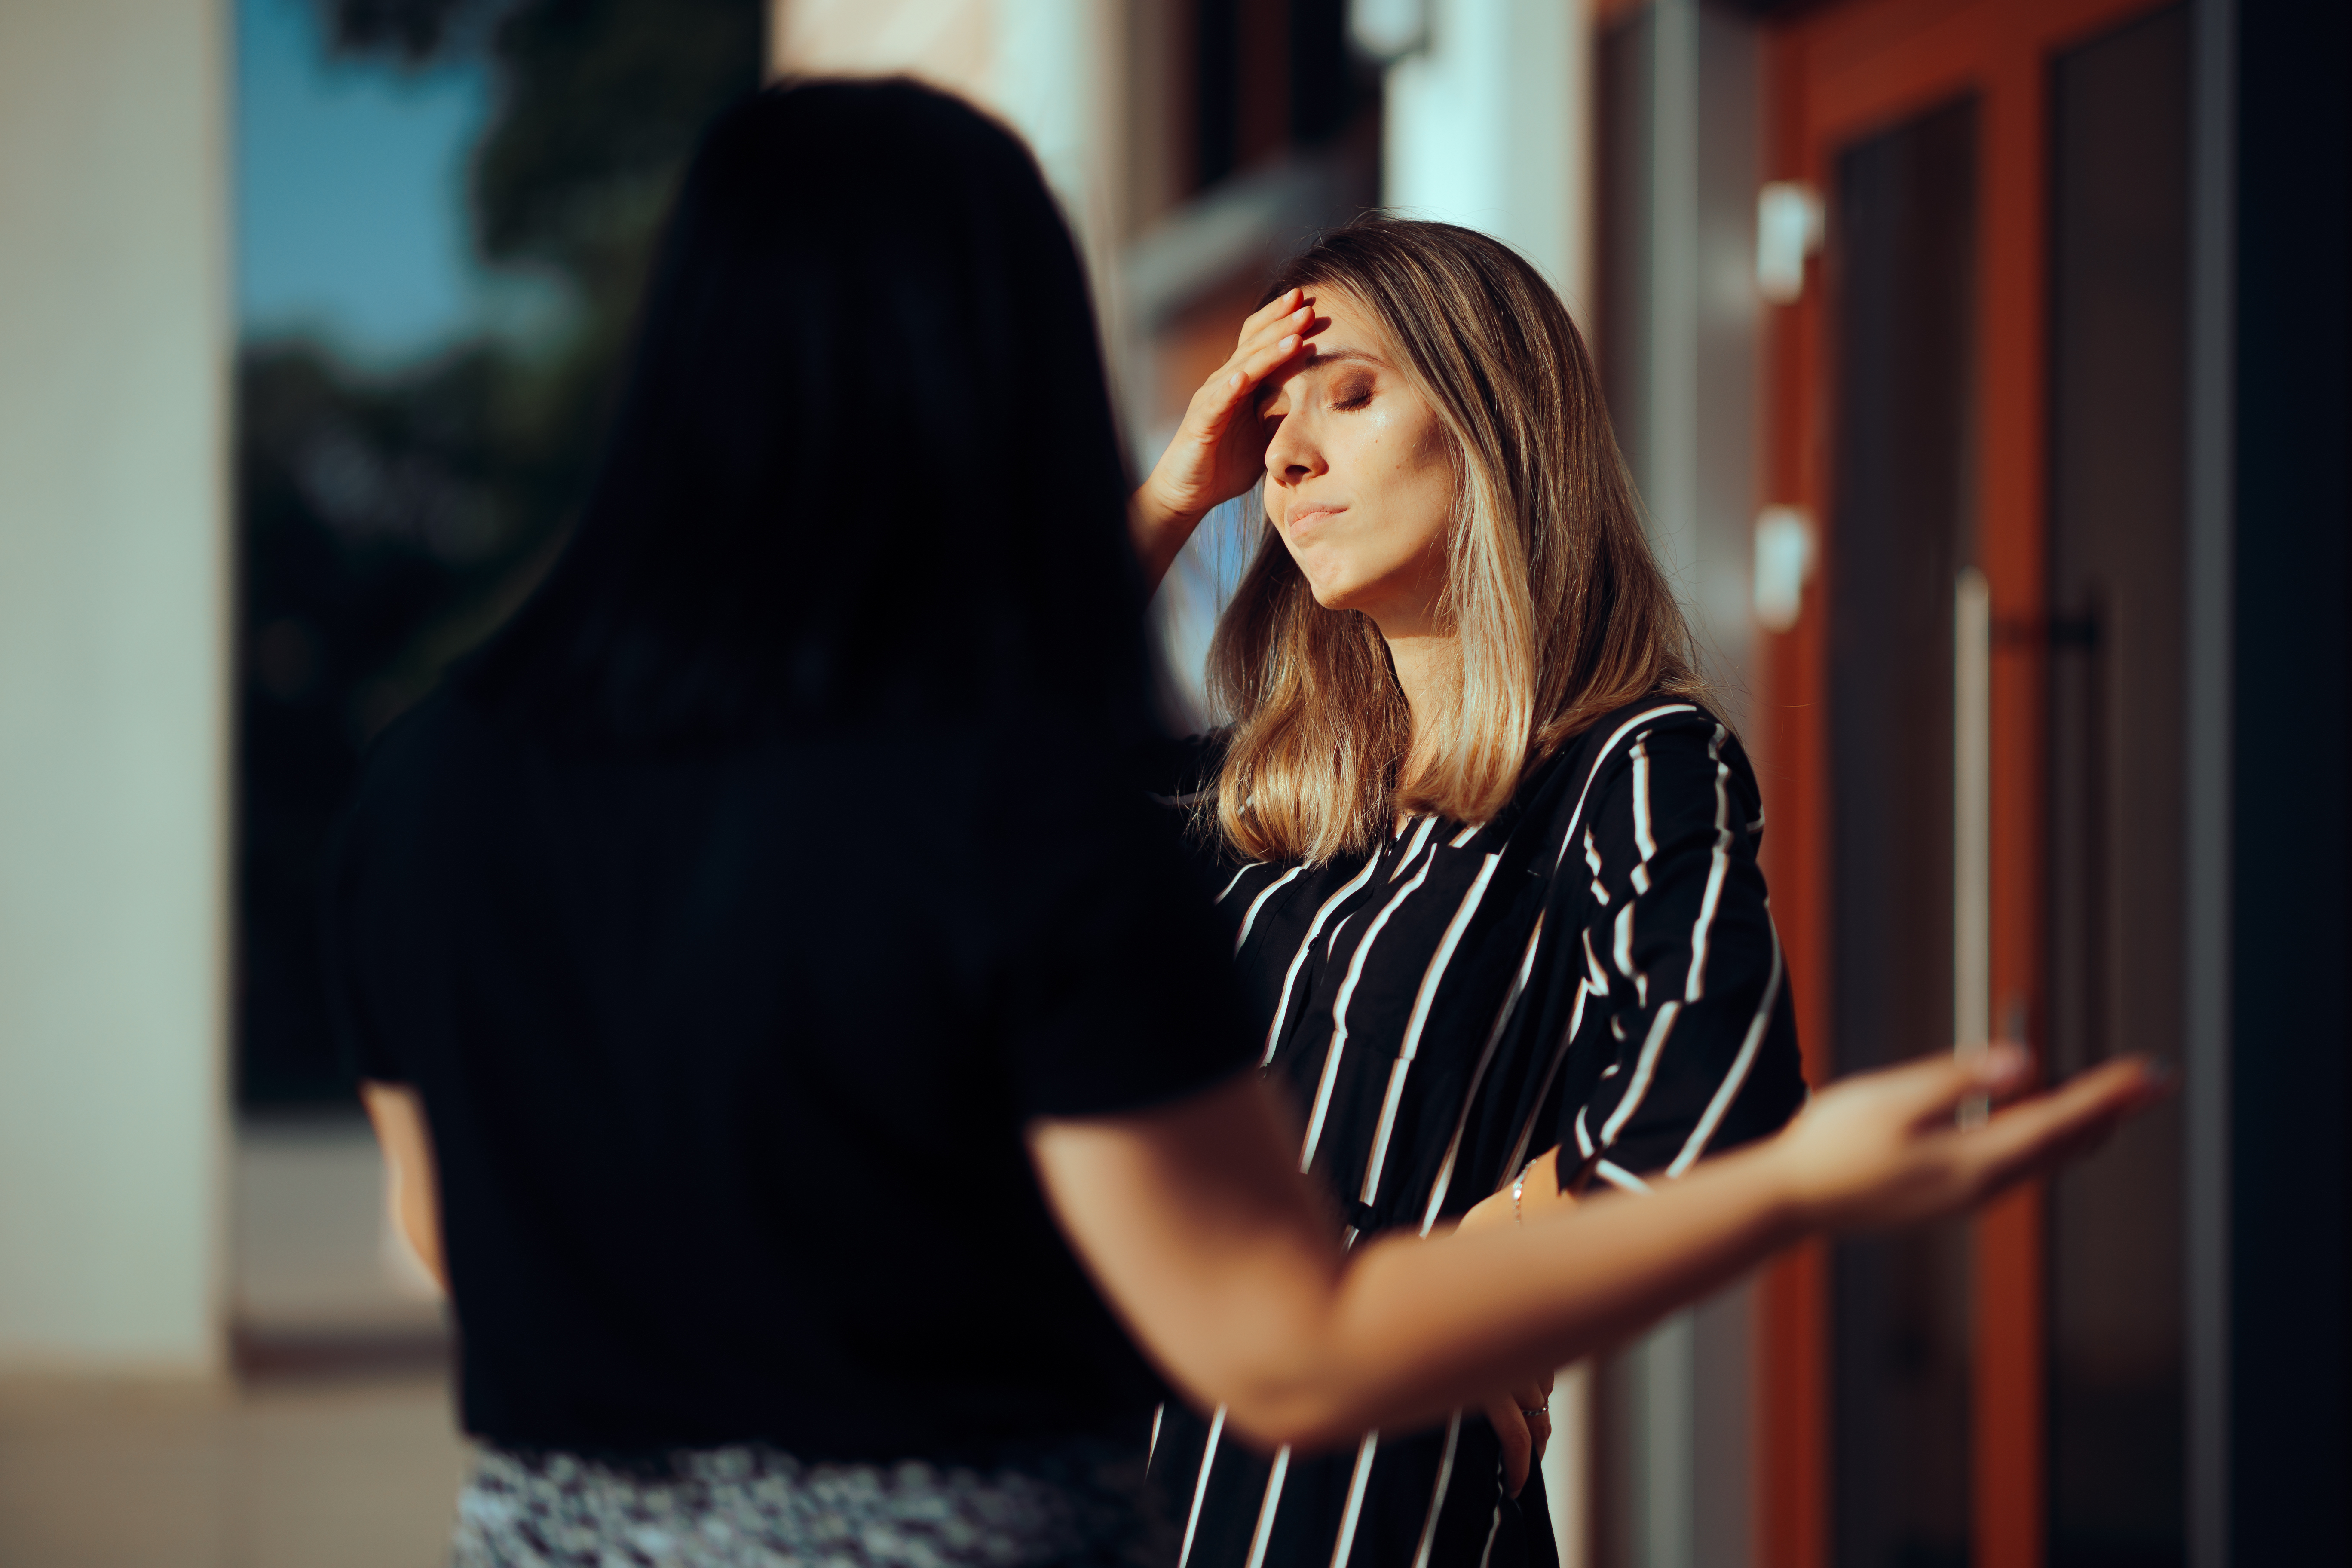 Deux femmes discutent prises dans une dispute | Source : Getty Images